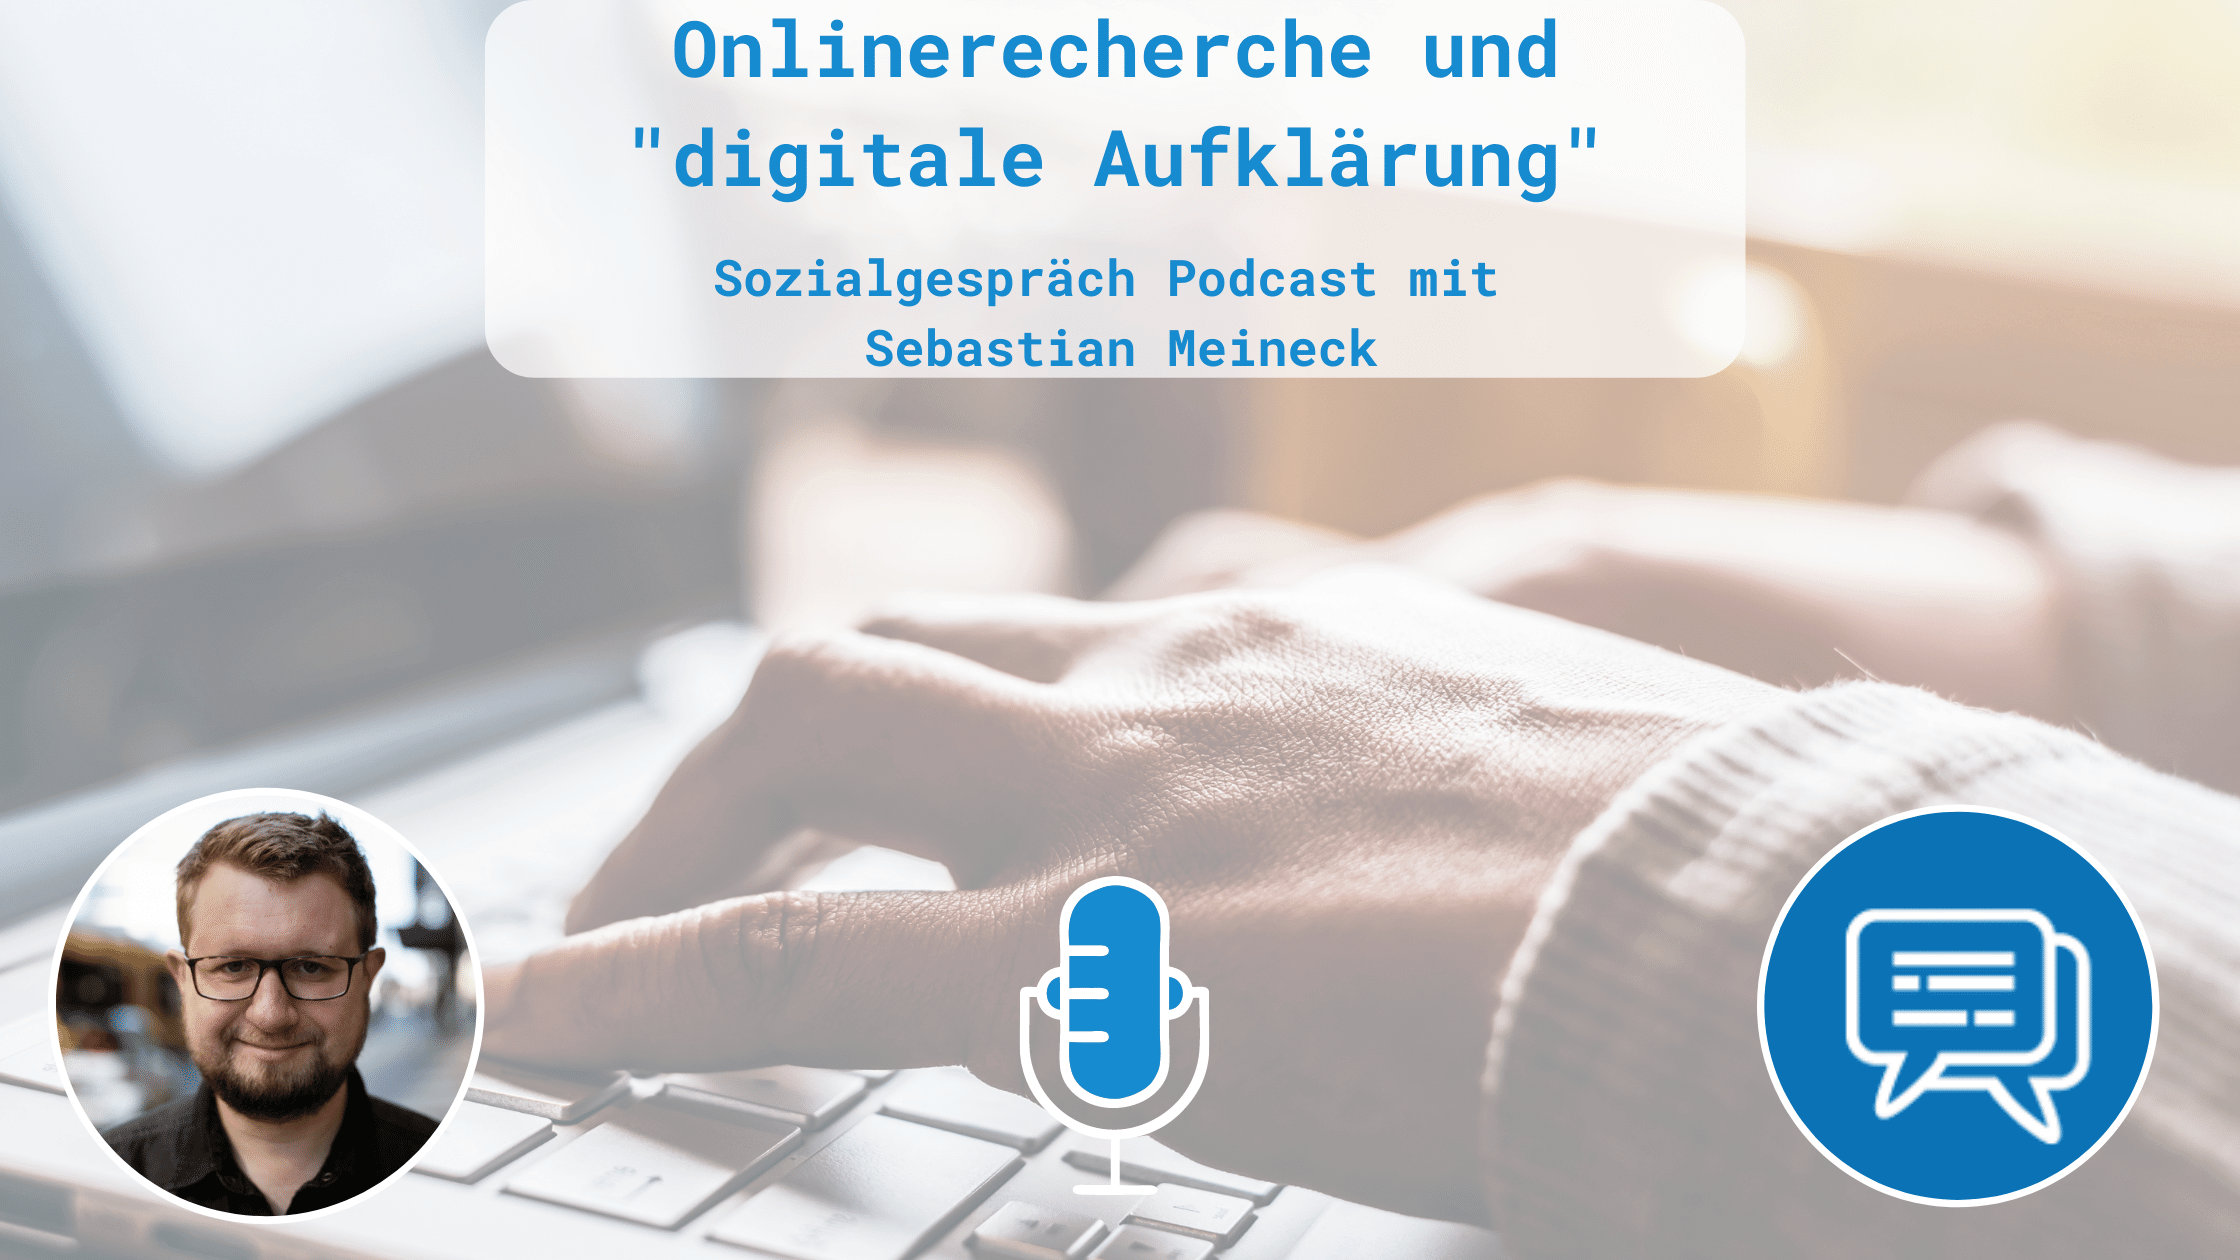 Onlinerecherche und „Aufklärung 2.0“: Sozialgespräch mit Journalist Sebastian Meineck